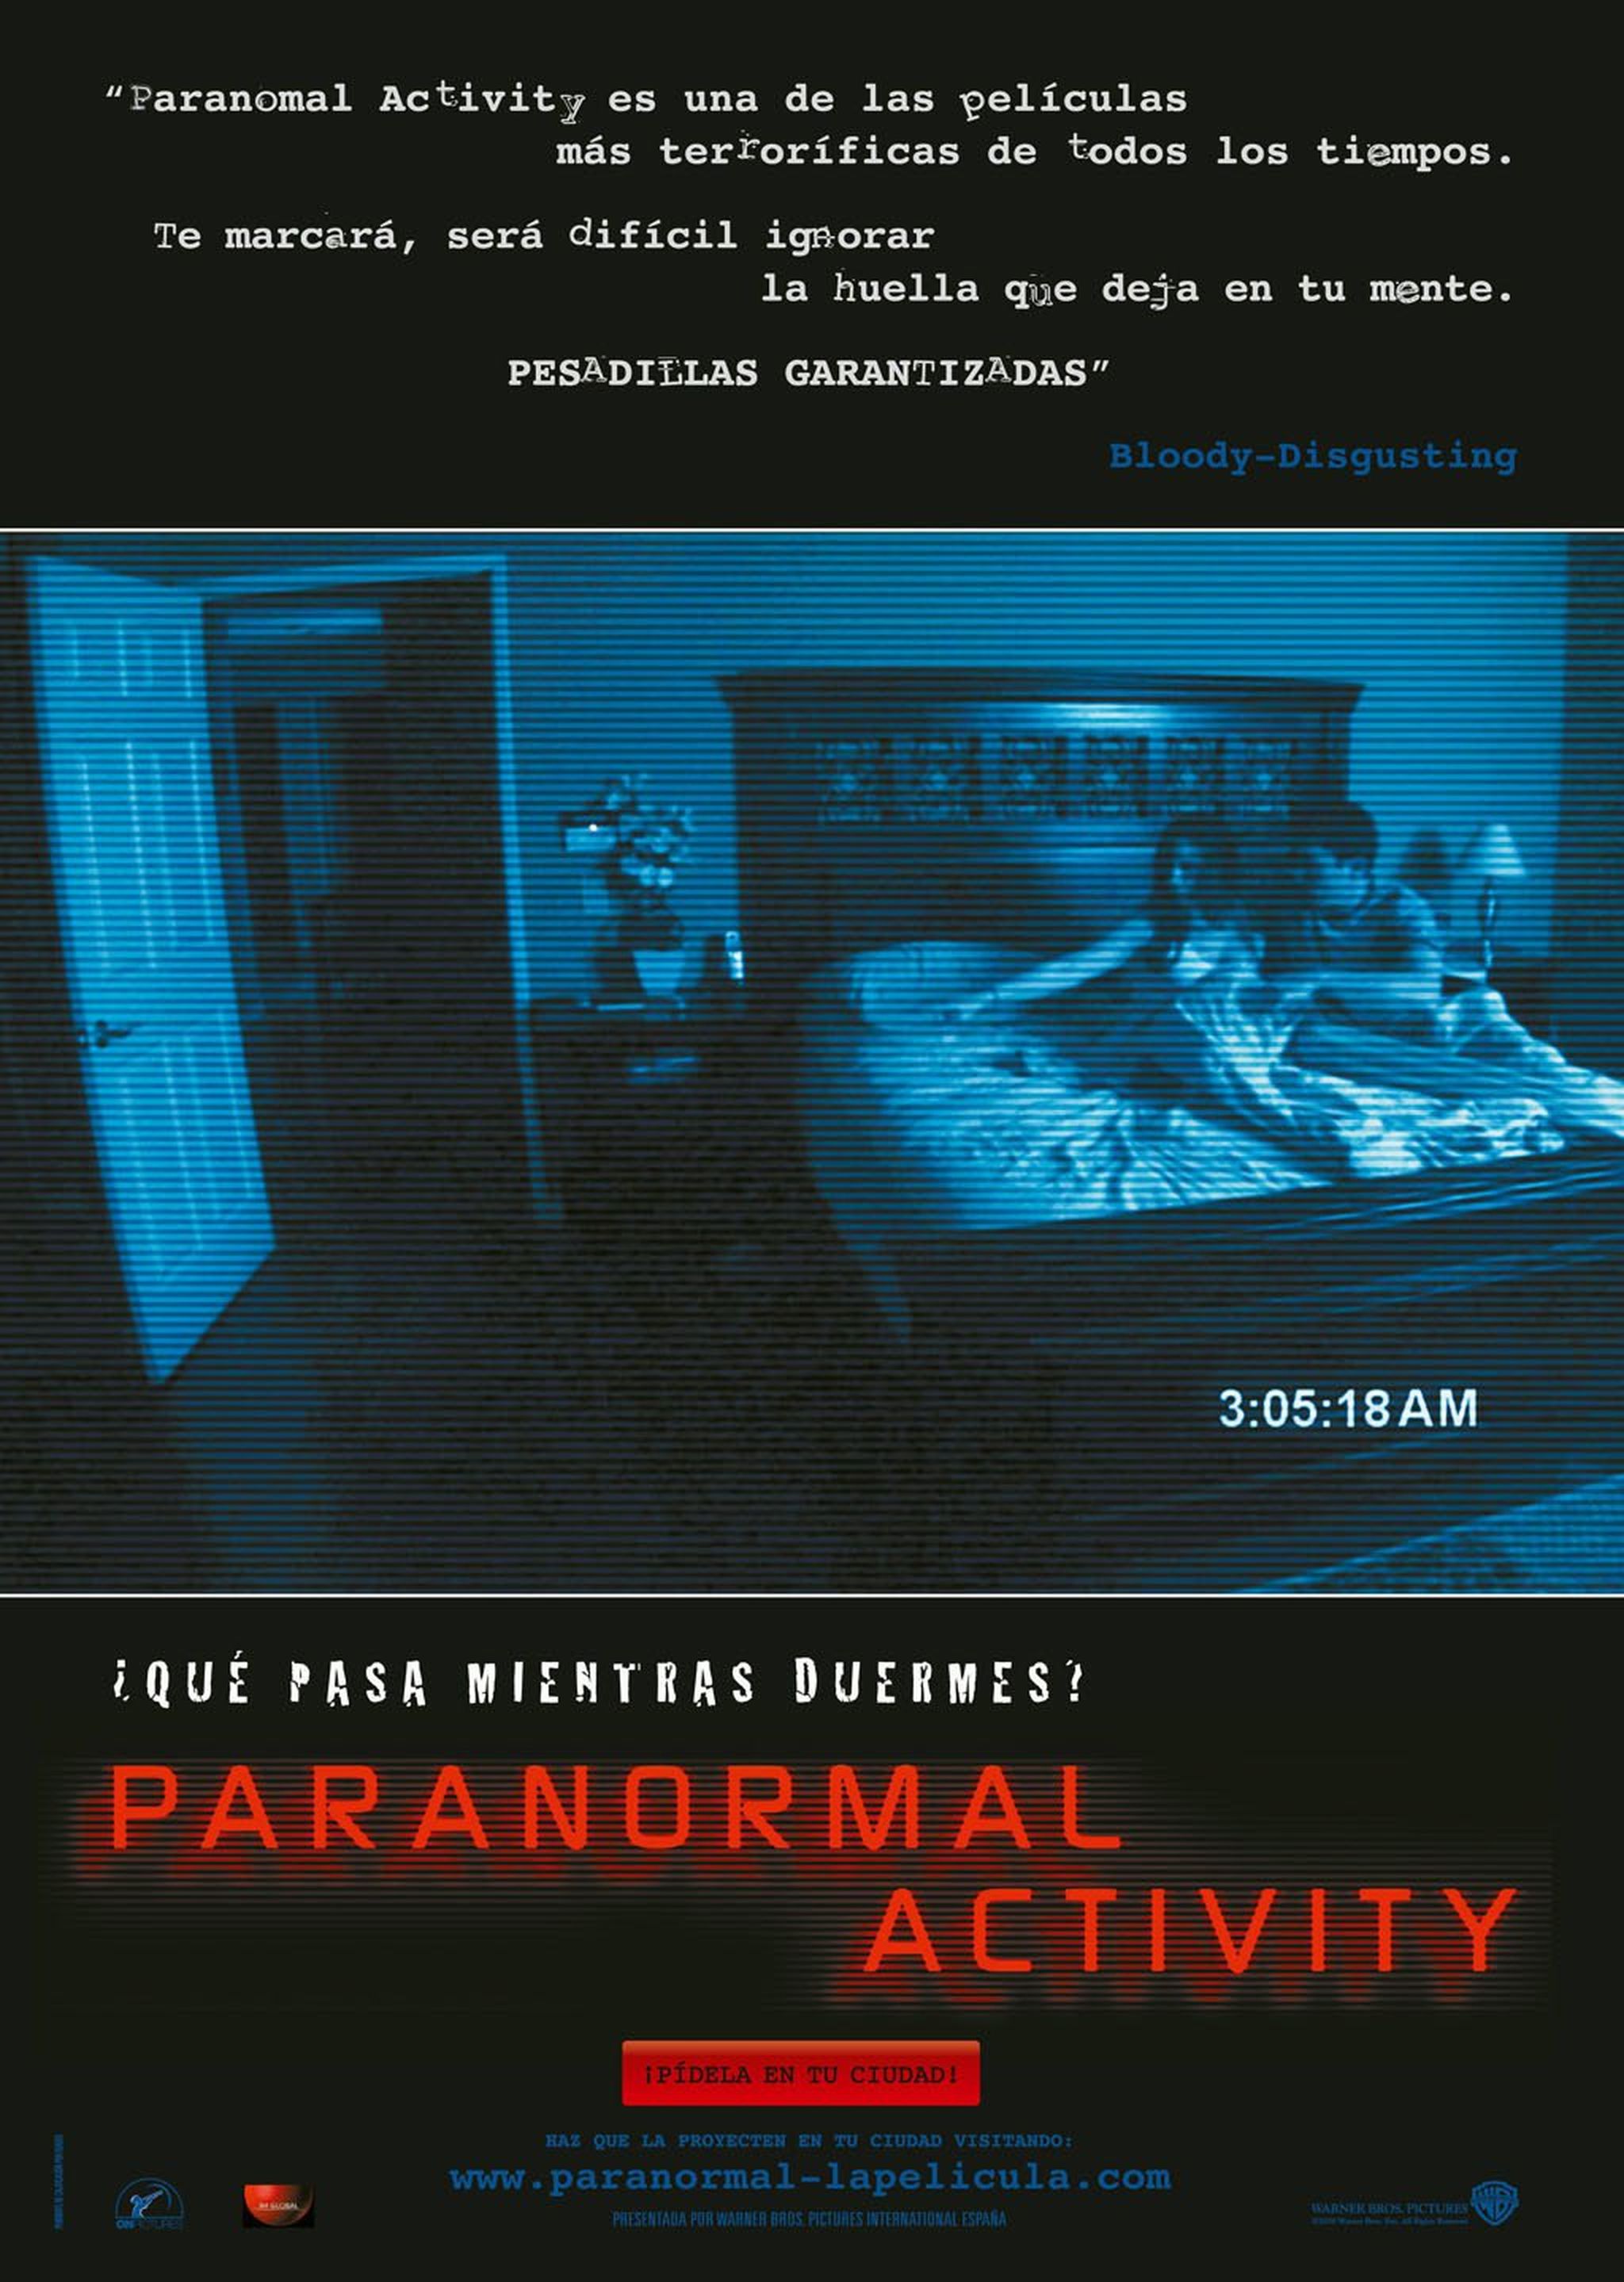 Equipo paranormal (Actividad paranormal)